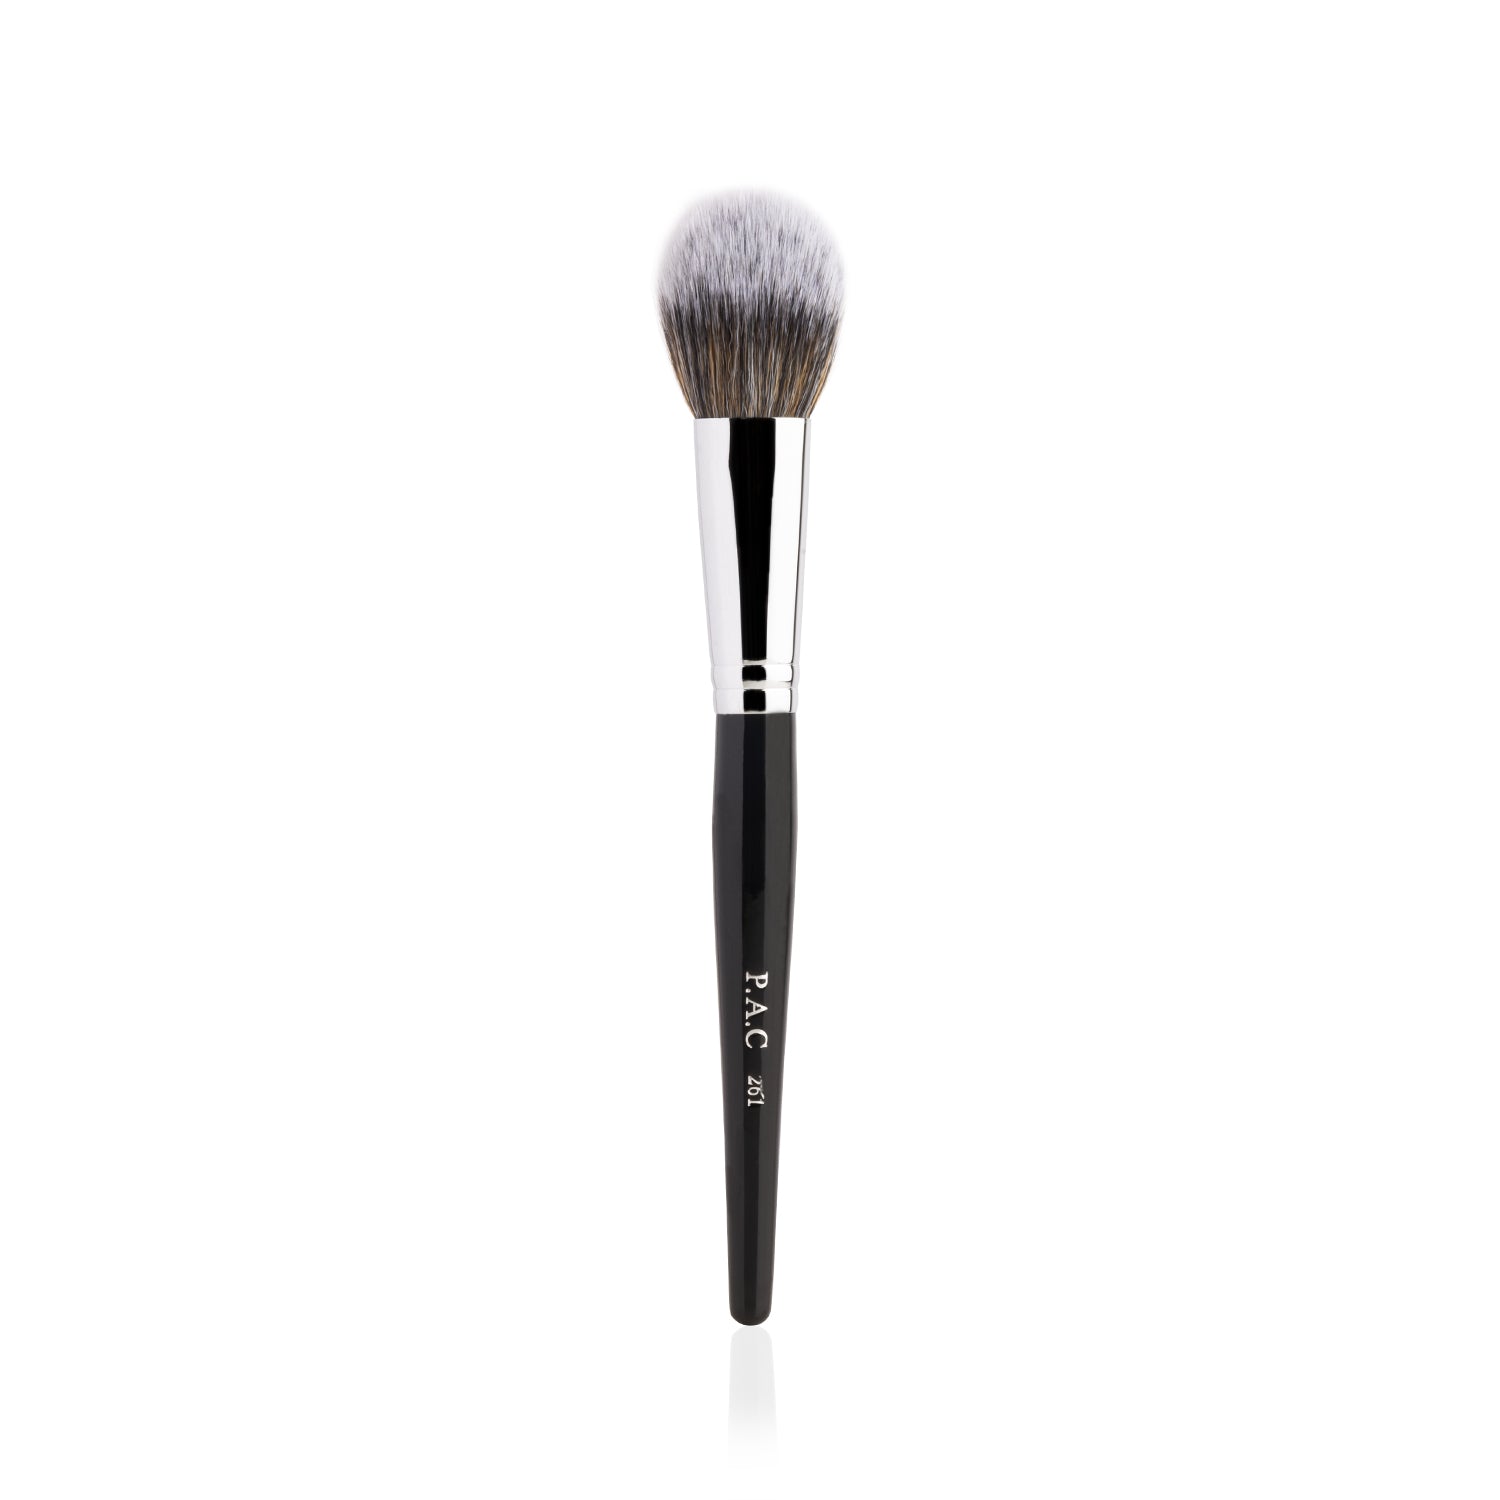 PAC Cosmetics Powder Brush 261